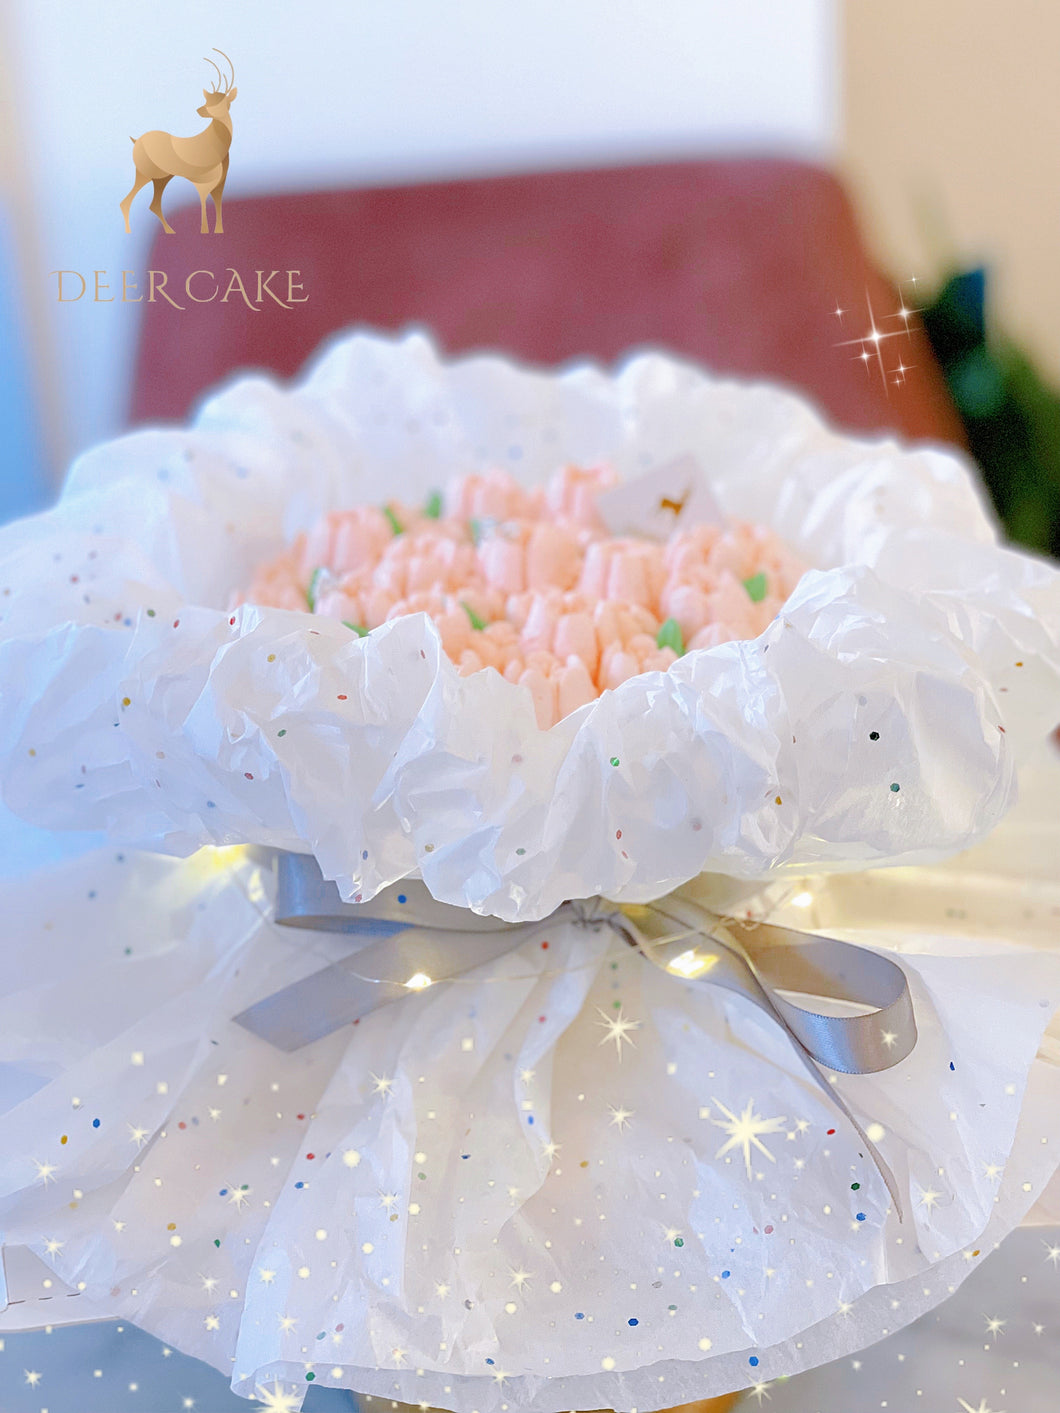 花束蛋糕-白